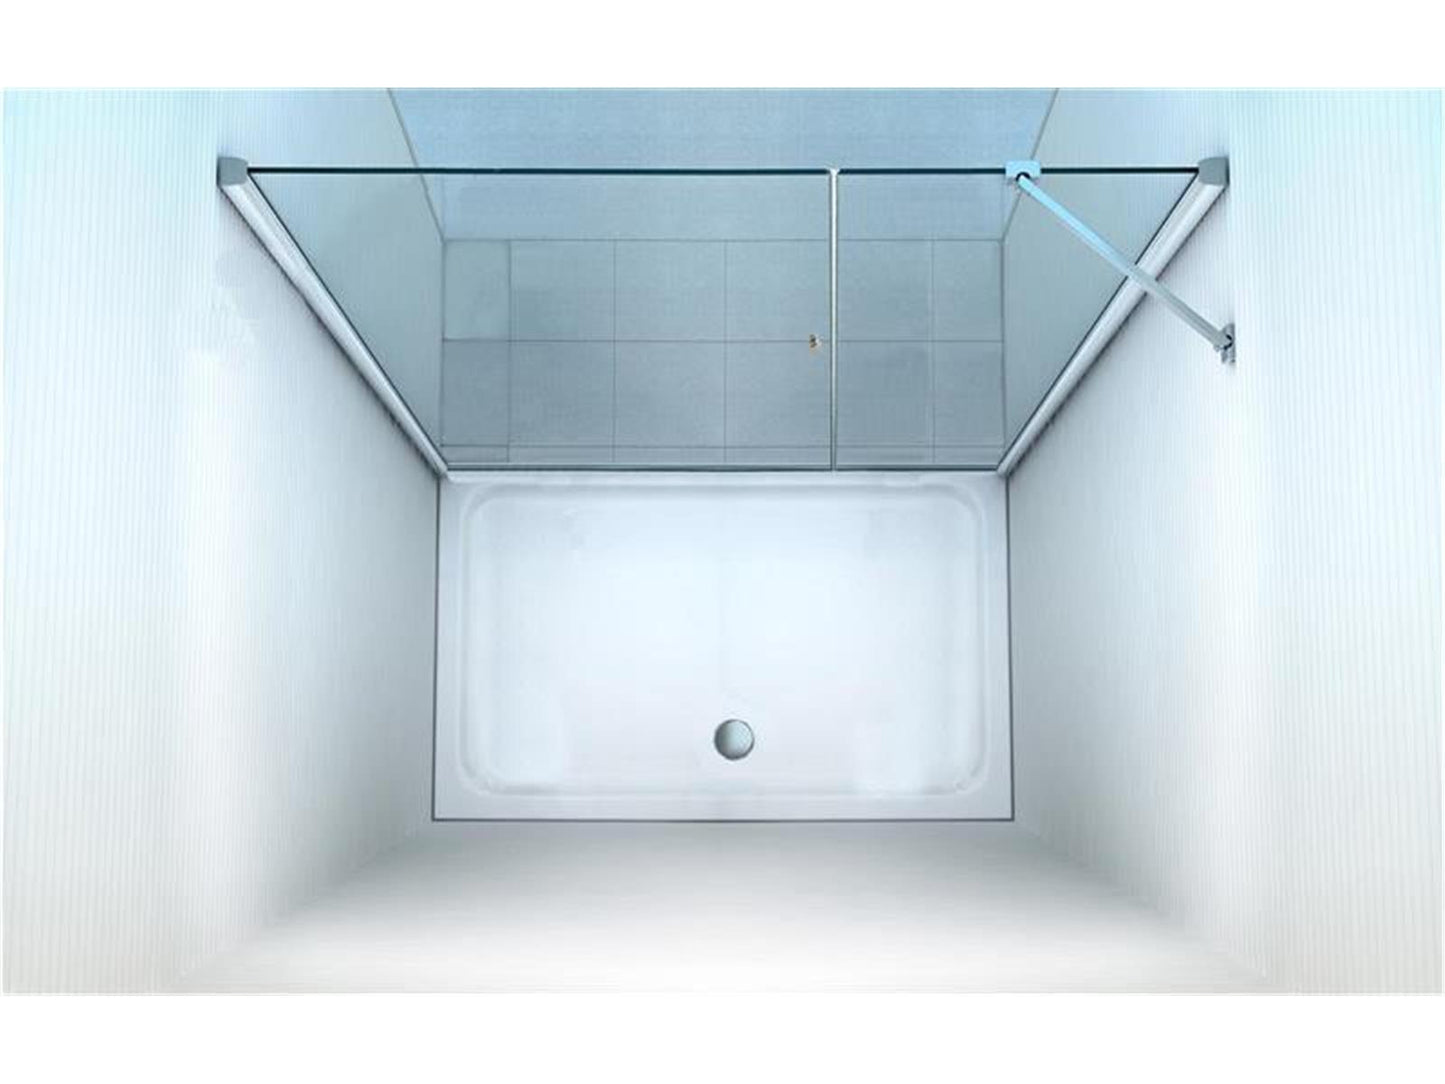 GlasHomeCenter - cabina nicho Florida (155 x 195 cm) - vidrio de seguridad templado de 8 mm - sin plato de ducha